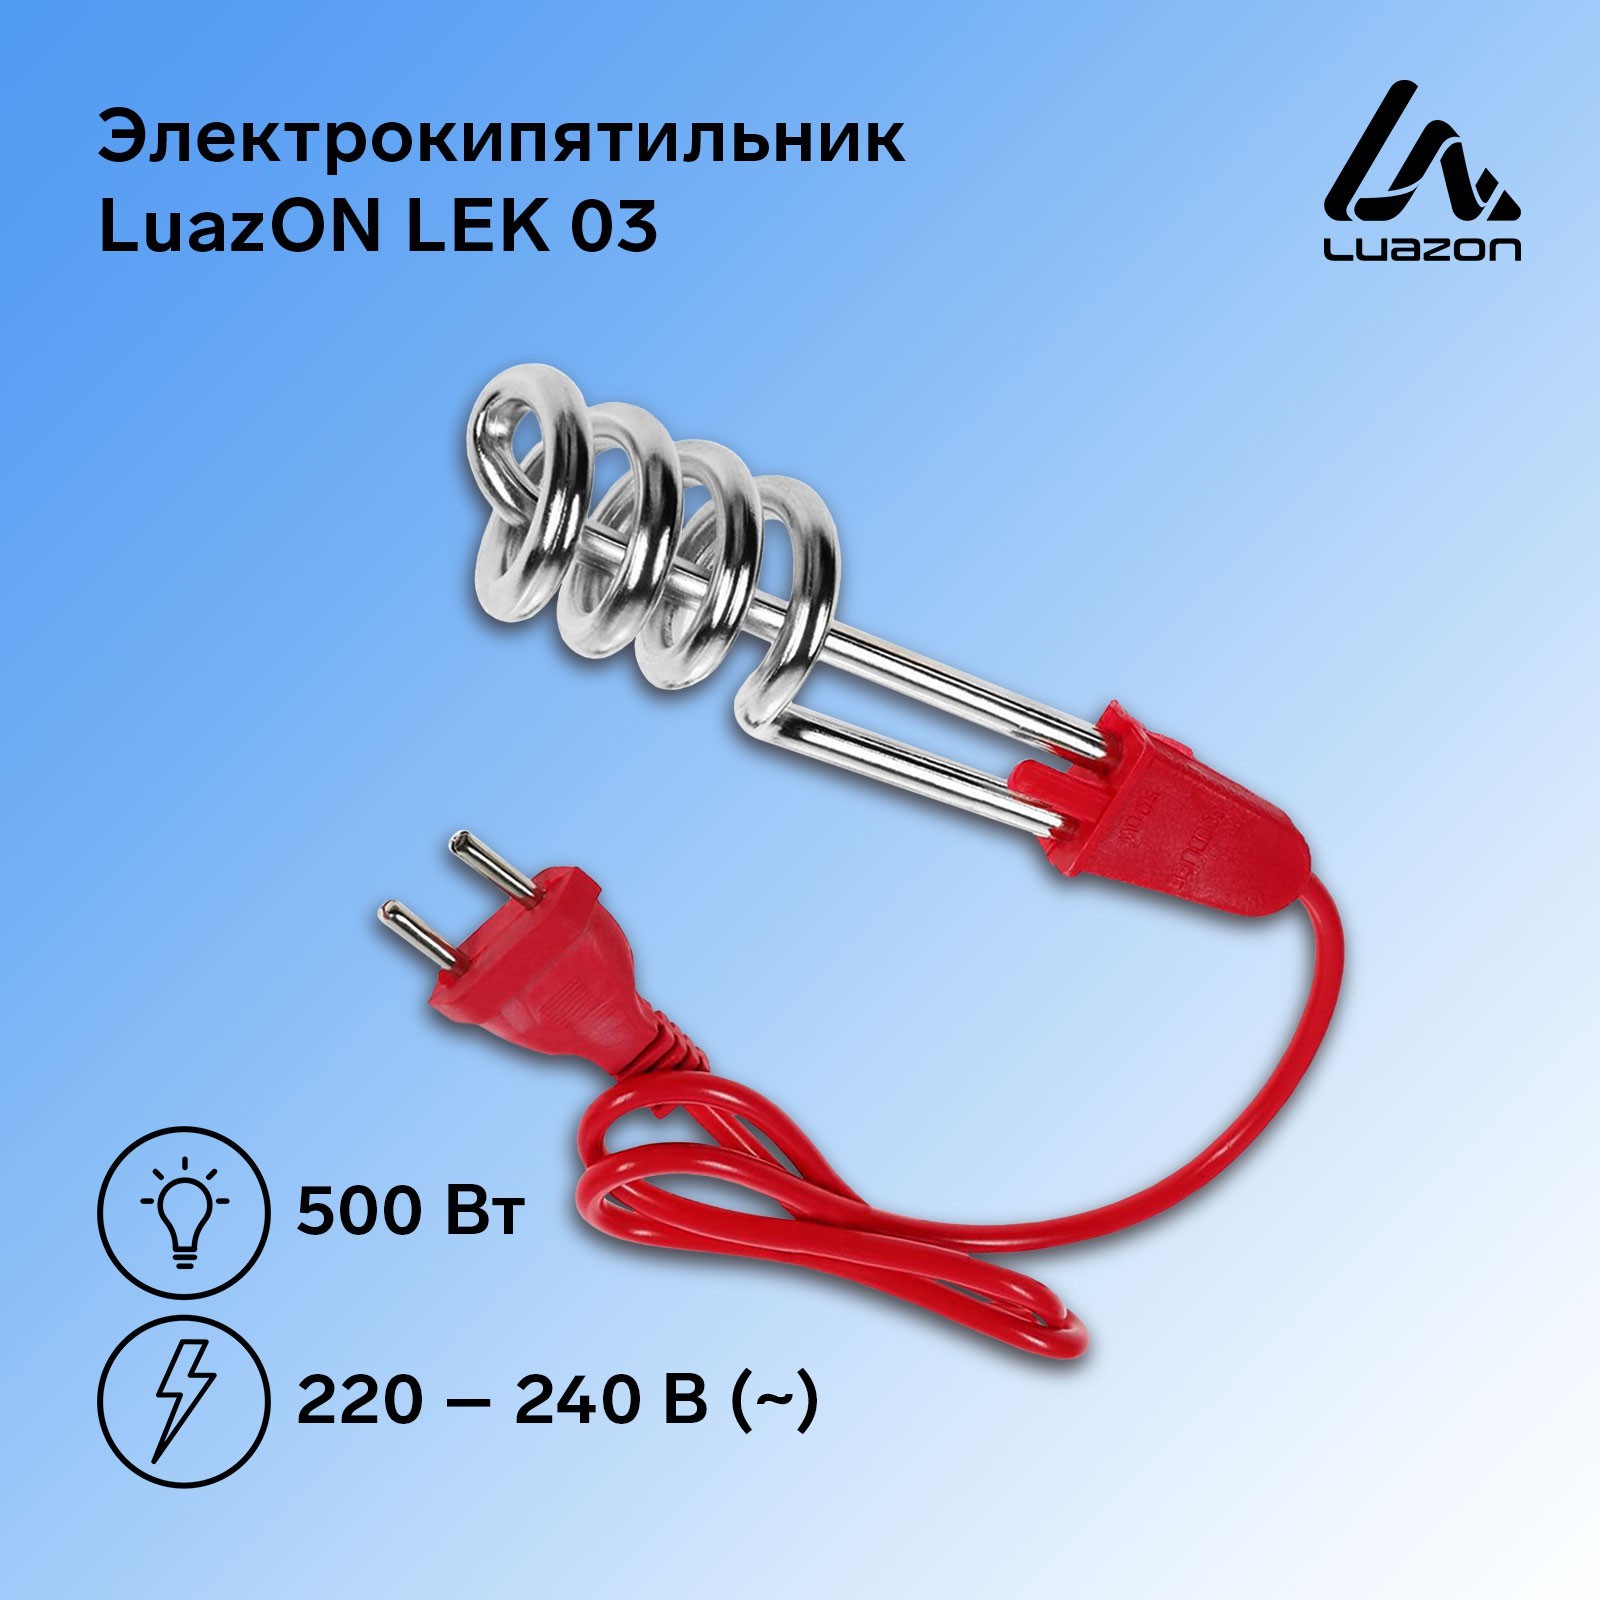 Электрокипятильник Luazon LEK 03, 500 Вт, спираль кольцо, 16х3 см, 220 В, красный 182682